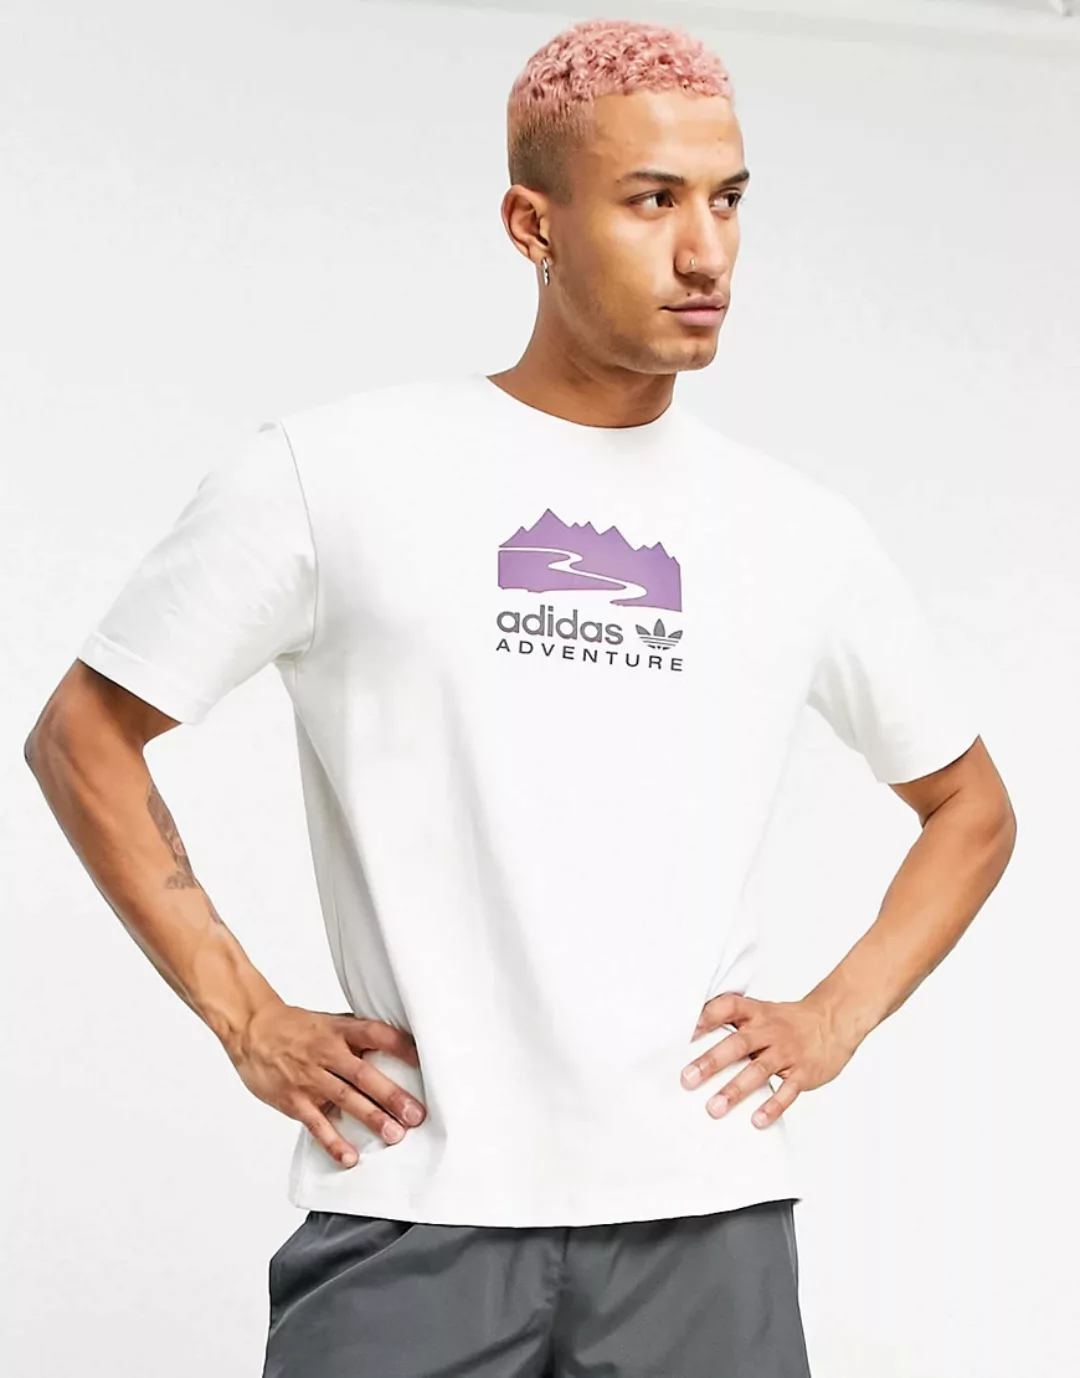 adidas Originals – Adventure – T-Shirt mit mittigem Print in Weiß günstig online kaufen